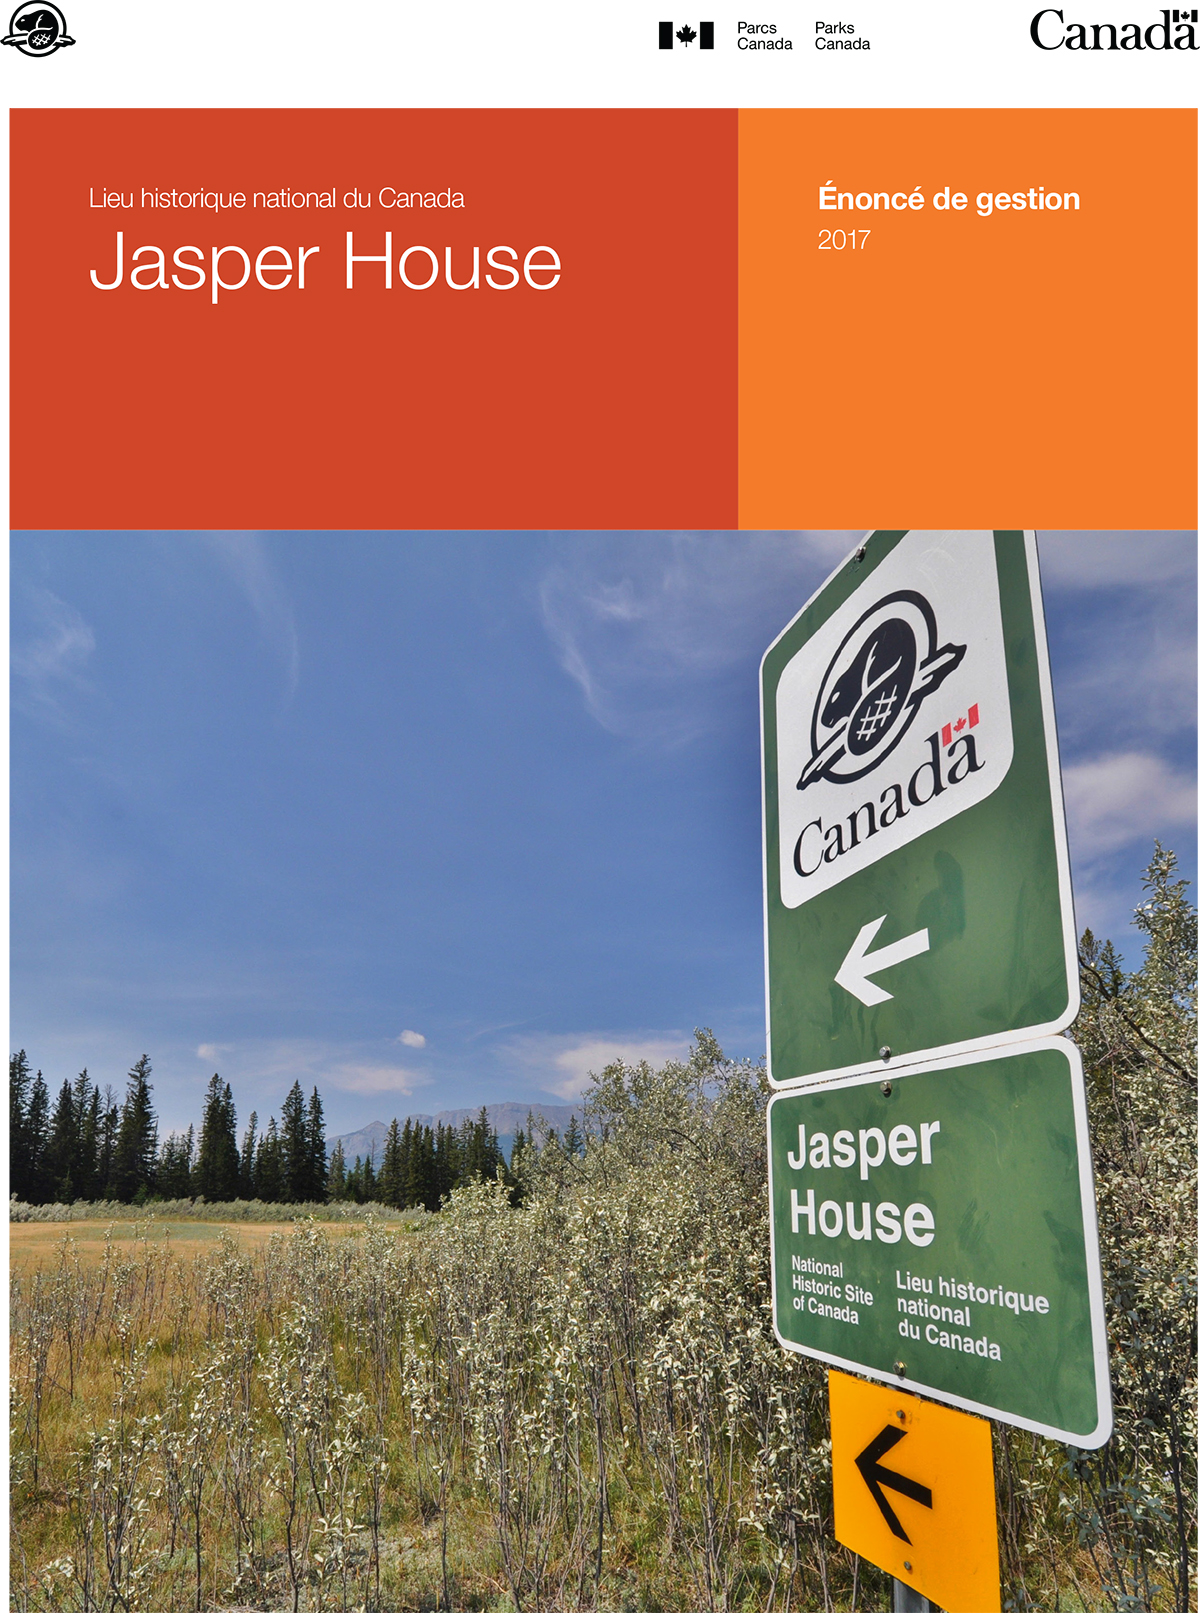 Un signe qui dit Jasper House. Deux rectangles orange. Les mots écrits en blanc sont les mots Site historique national du Canada Jasper House - Énoncé de gestion 2017